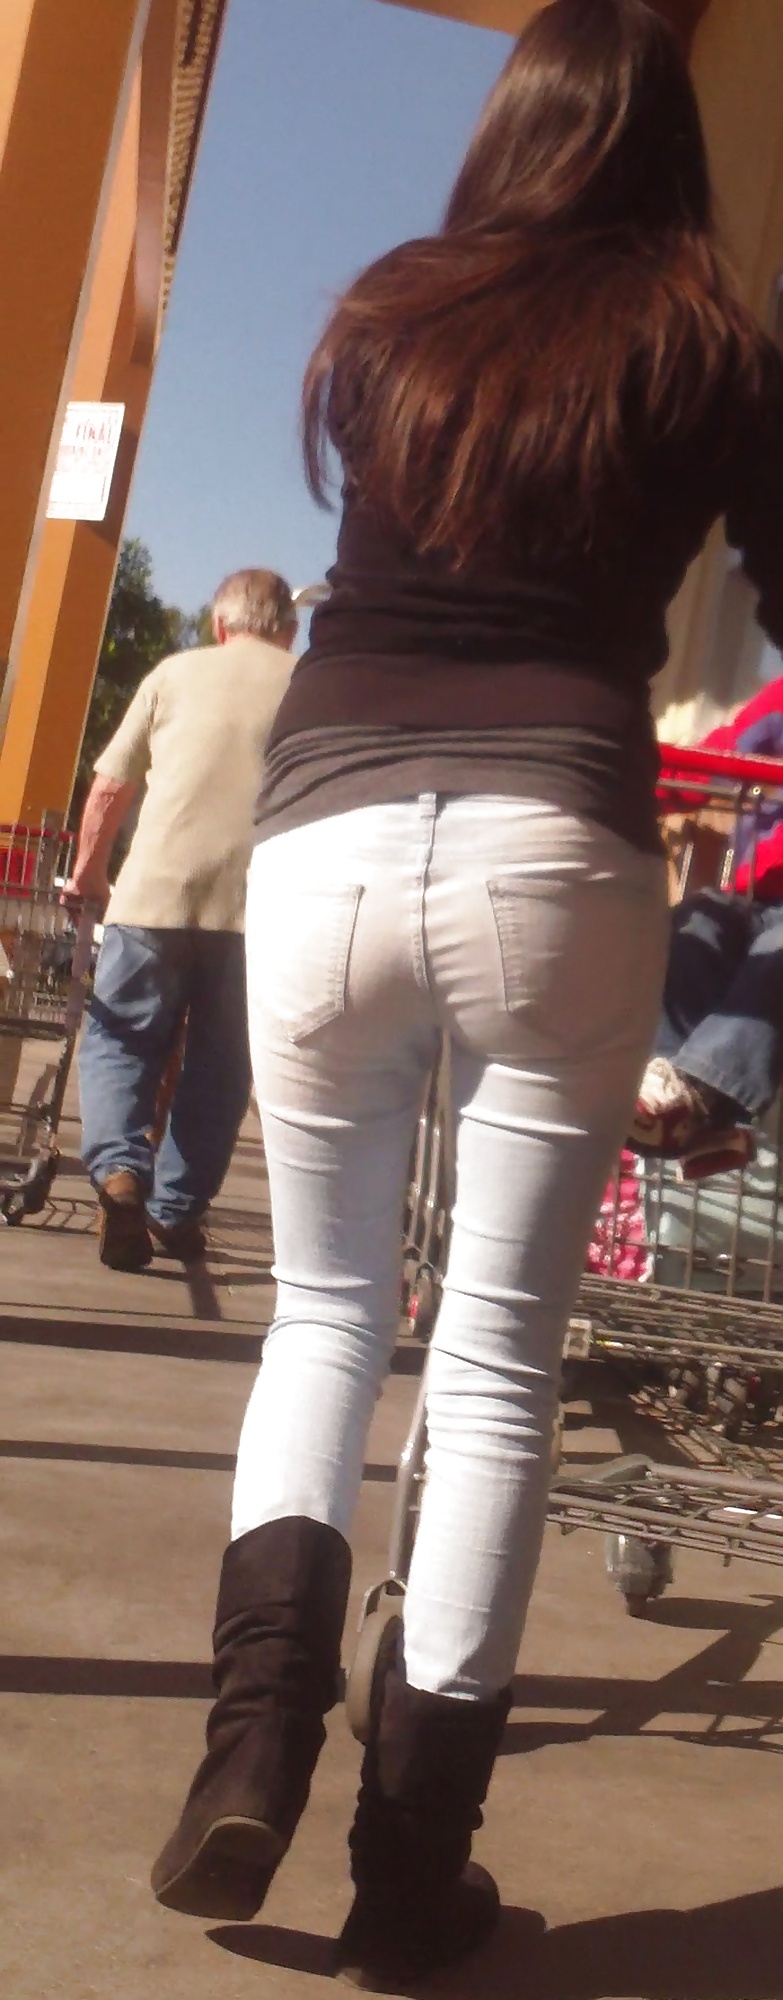 Popular teen girls ass & butt in jeans Part 6 #32009684